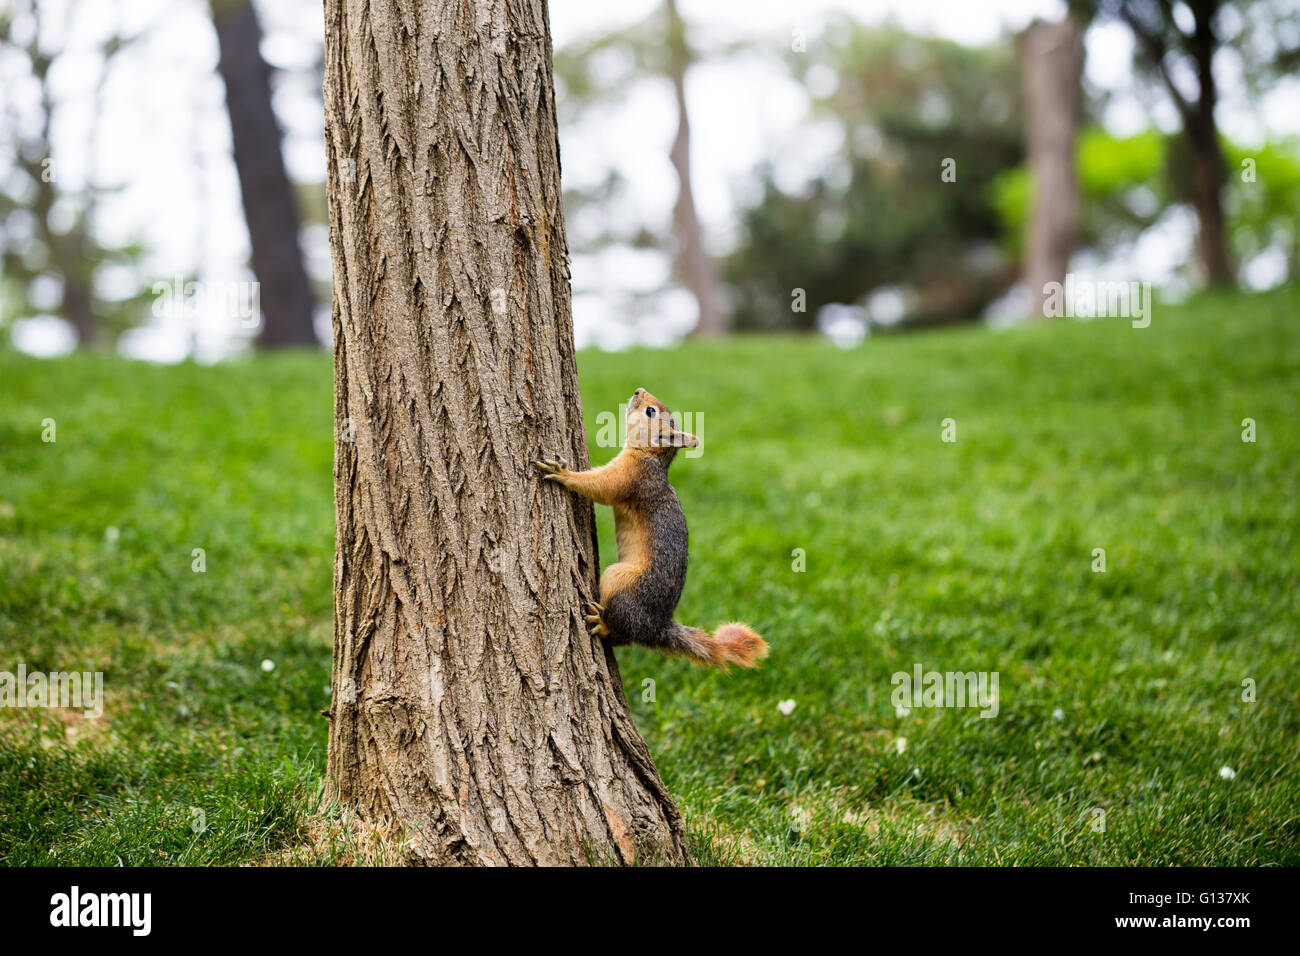 Curioso mono ardilla subiendo un tronco de pino Foto de stock